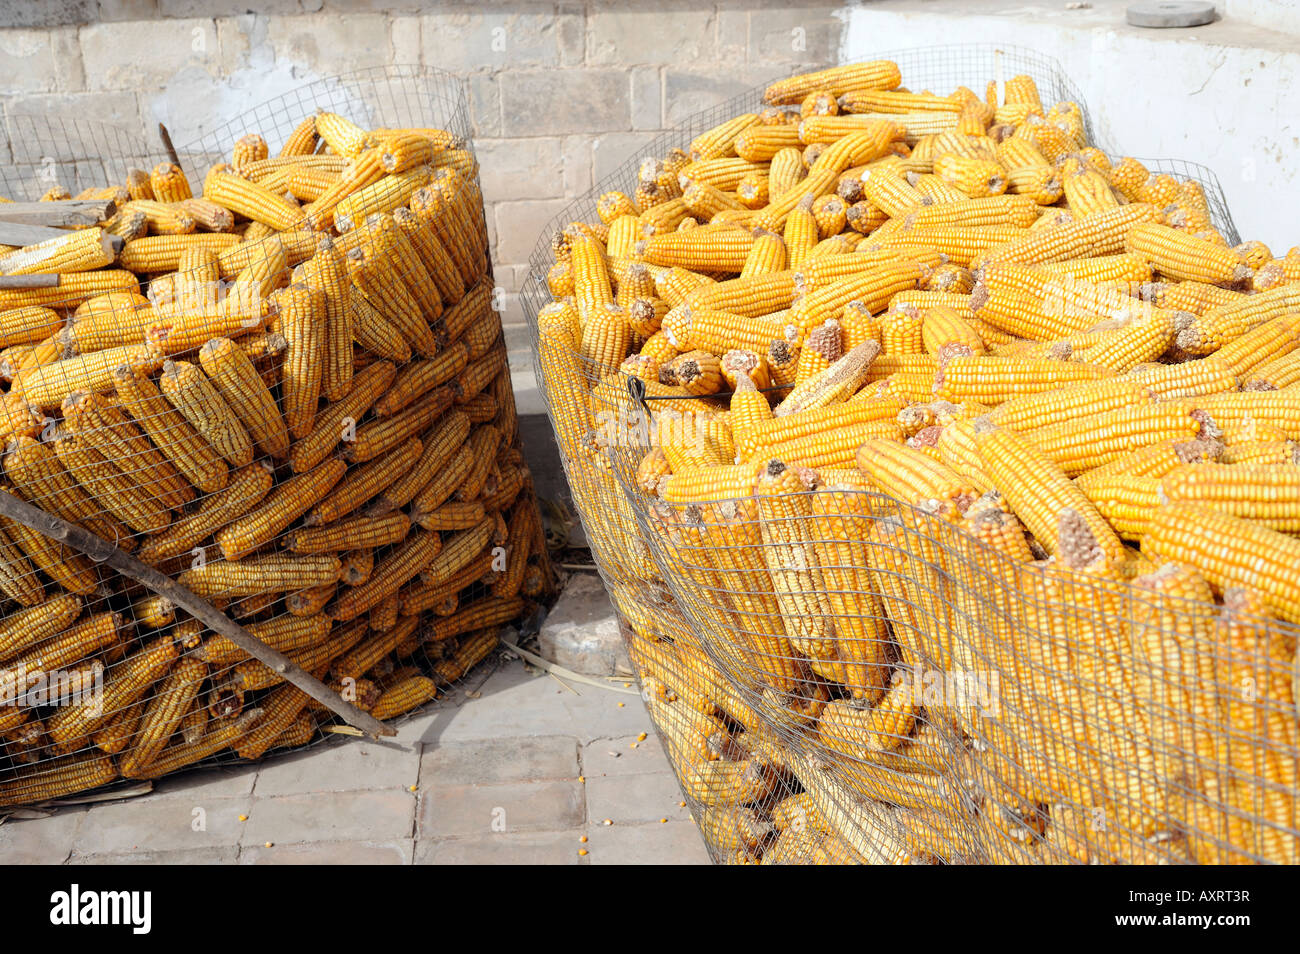 corn maize Stock Photo